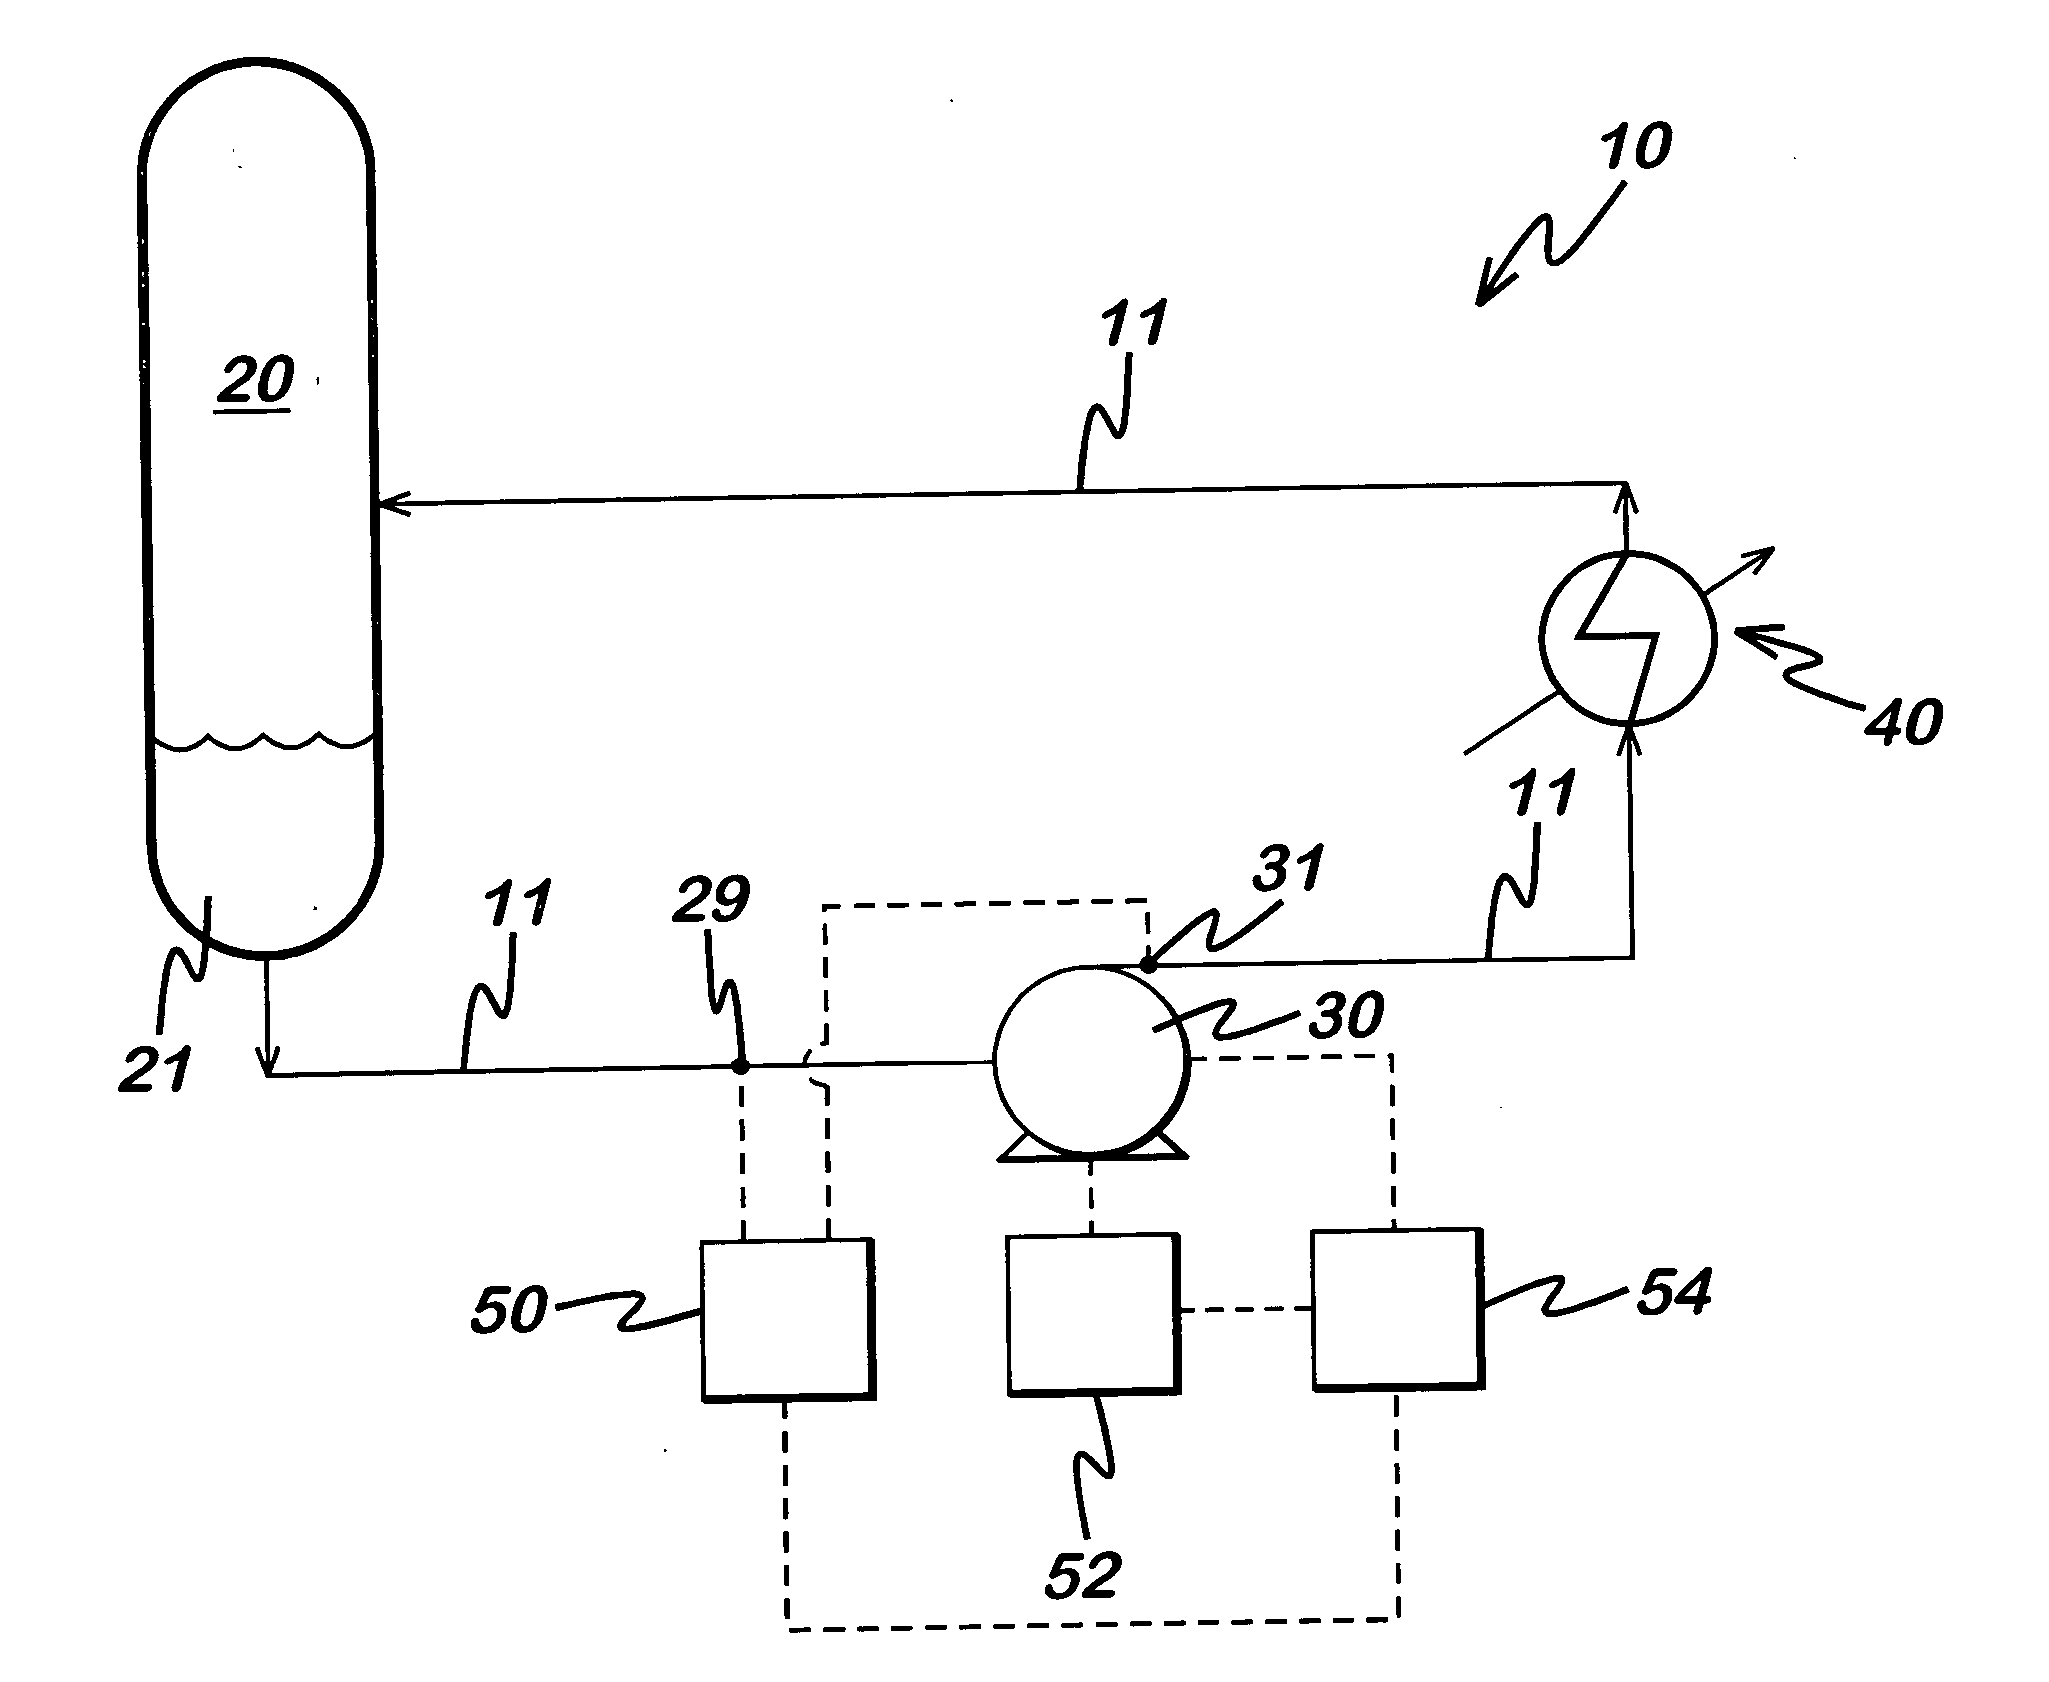 Process flow control circuit